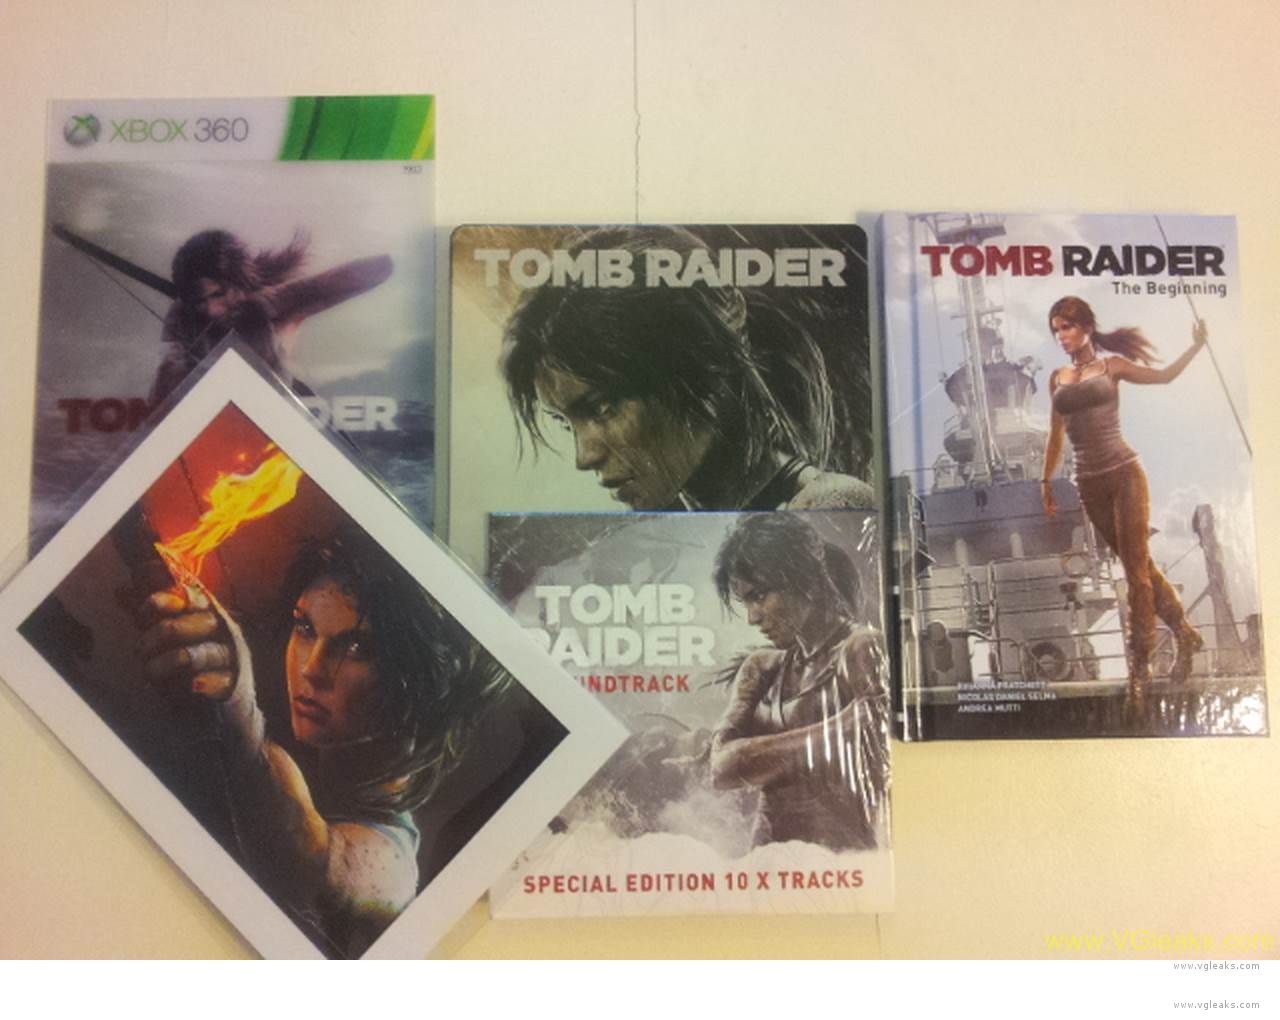 Tomb Raider (Reborn) Press Kit